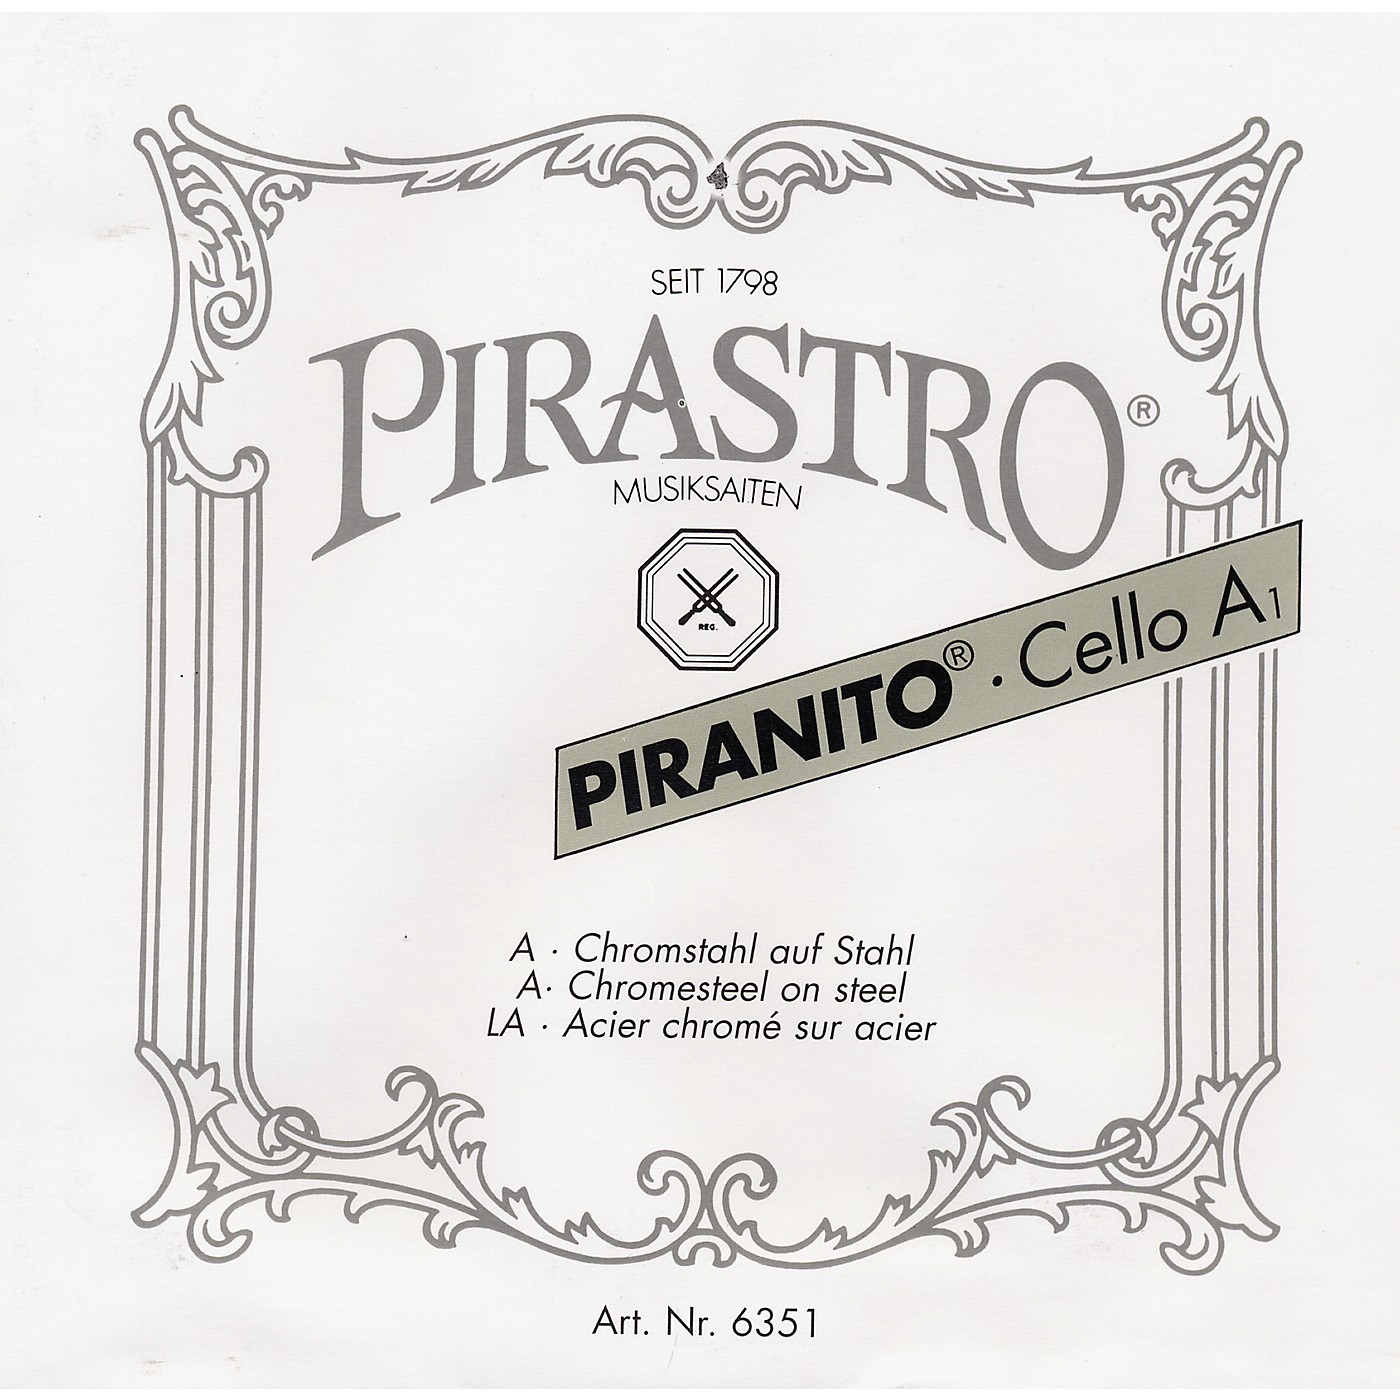 Pirastro Piranito Series Cello C String thumbnail